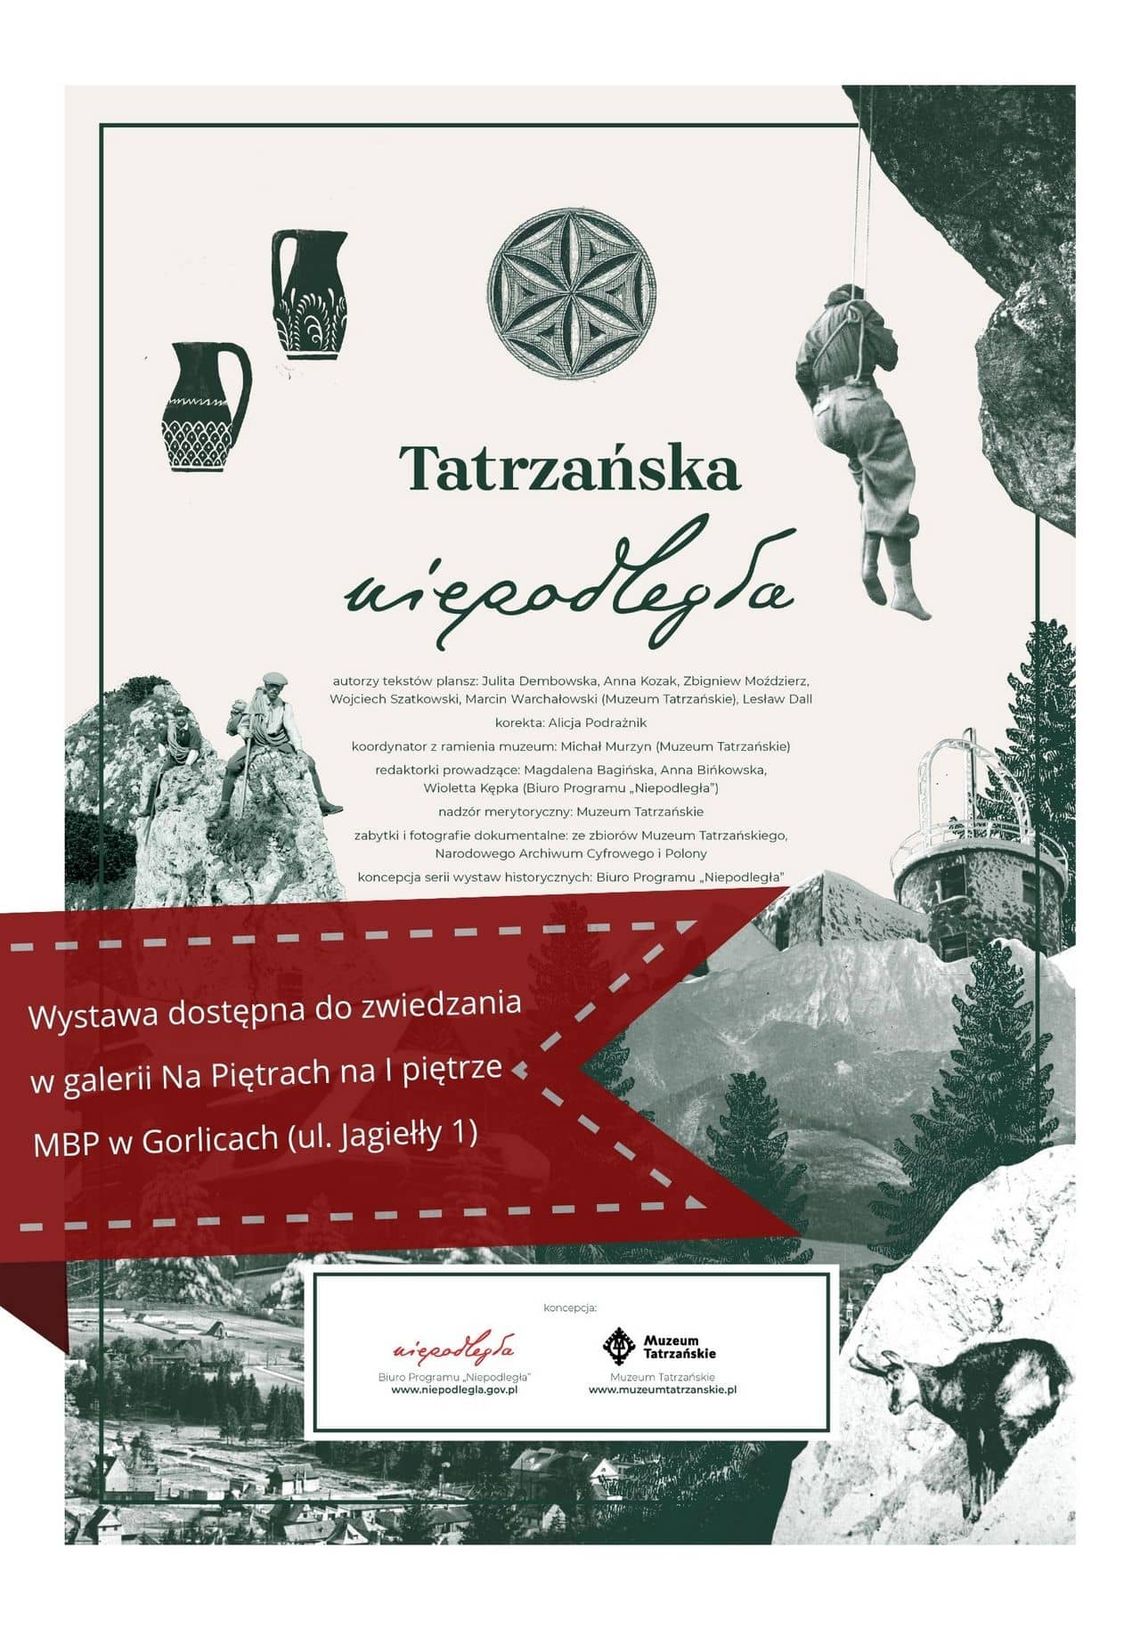 „Tatrzańska niepodległa” – wystawa dostępna w MBP w Gorlicach | halogorlice.info